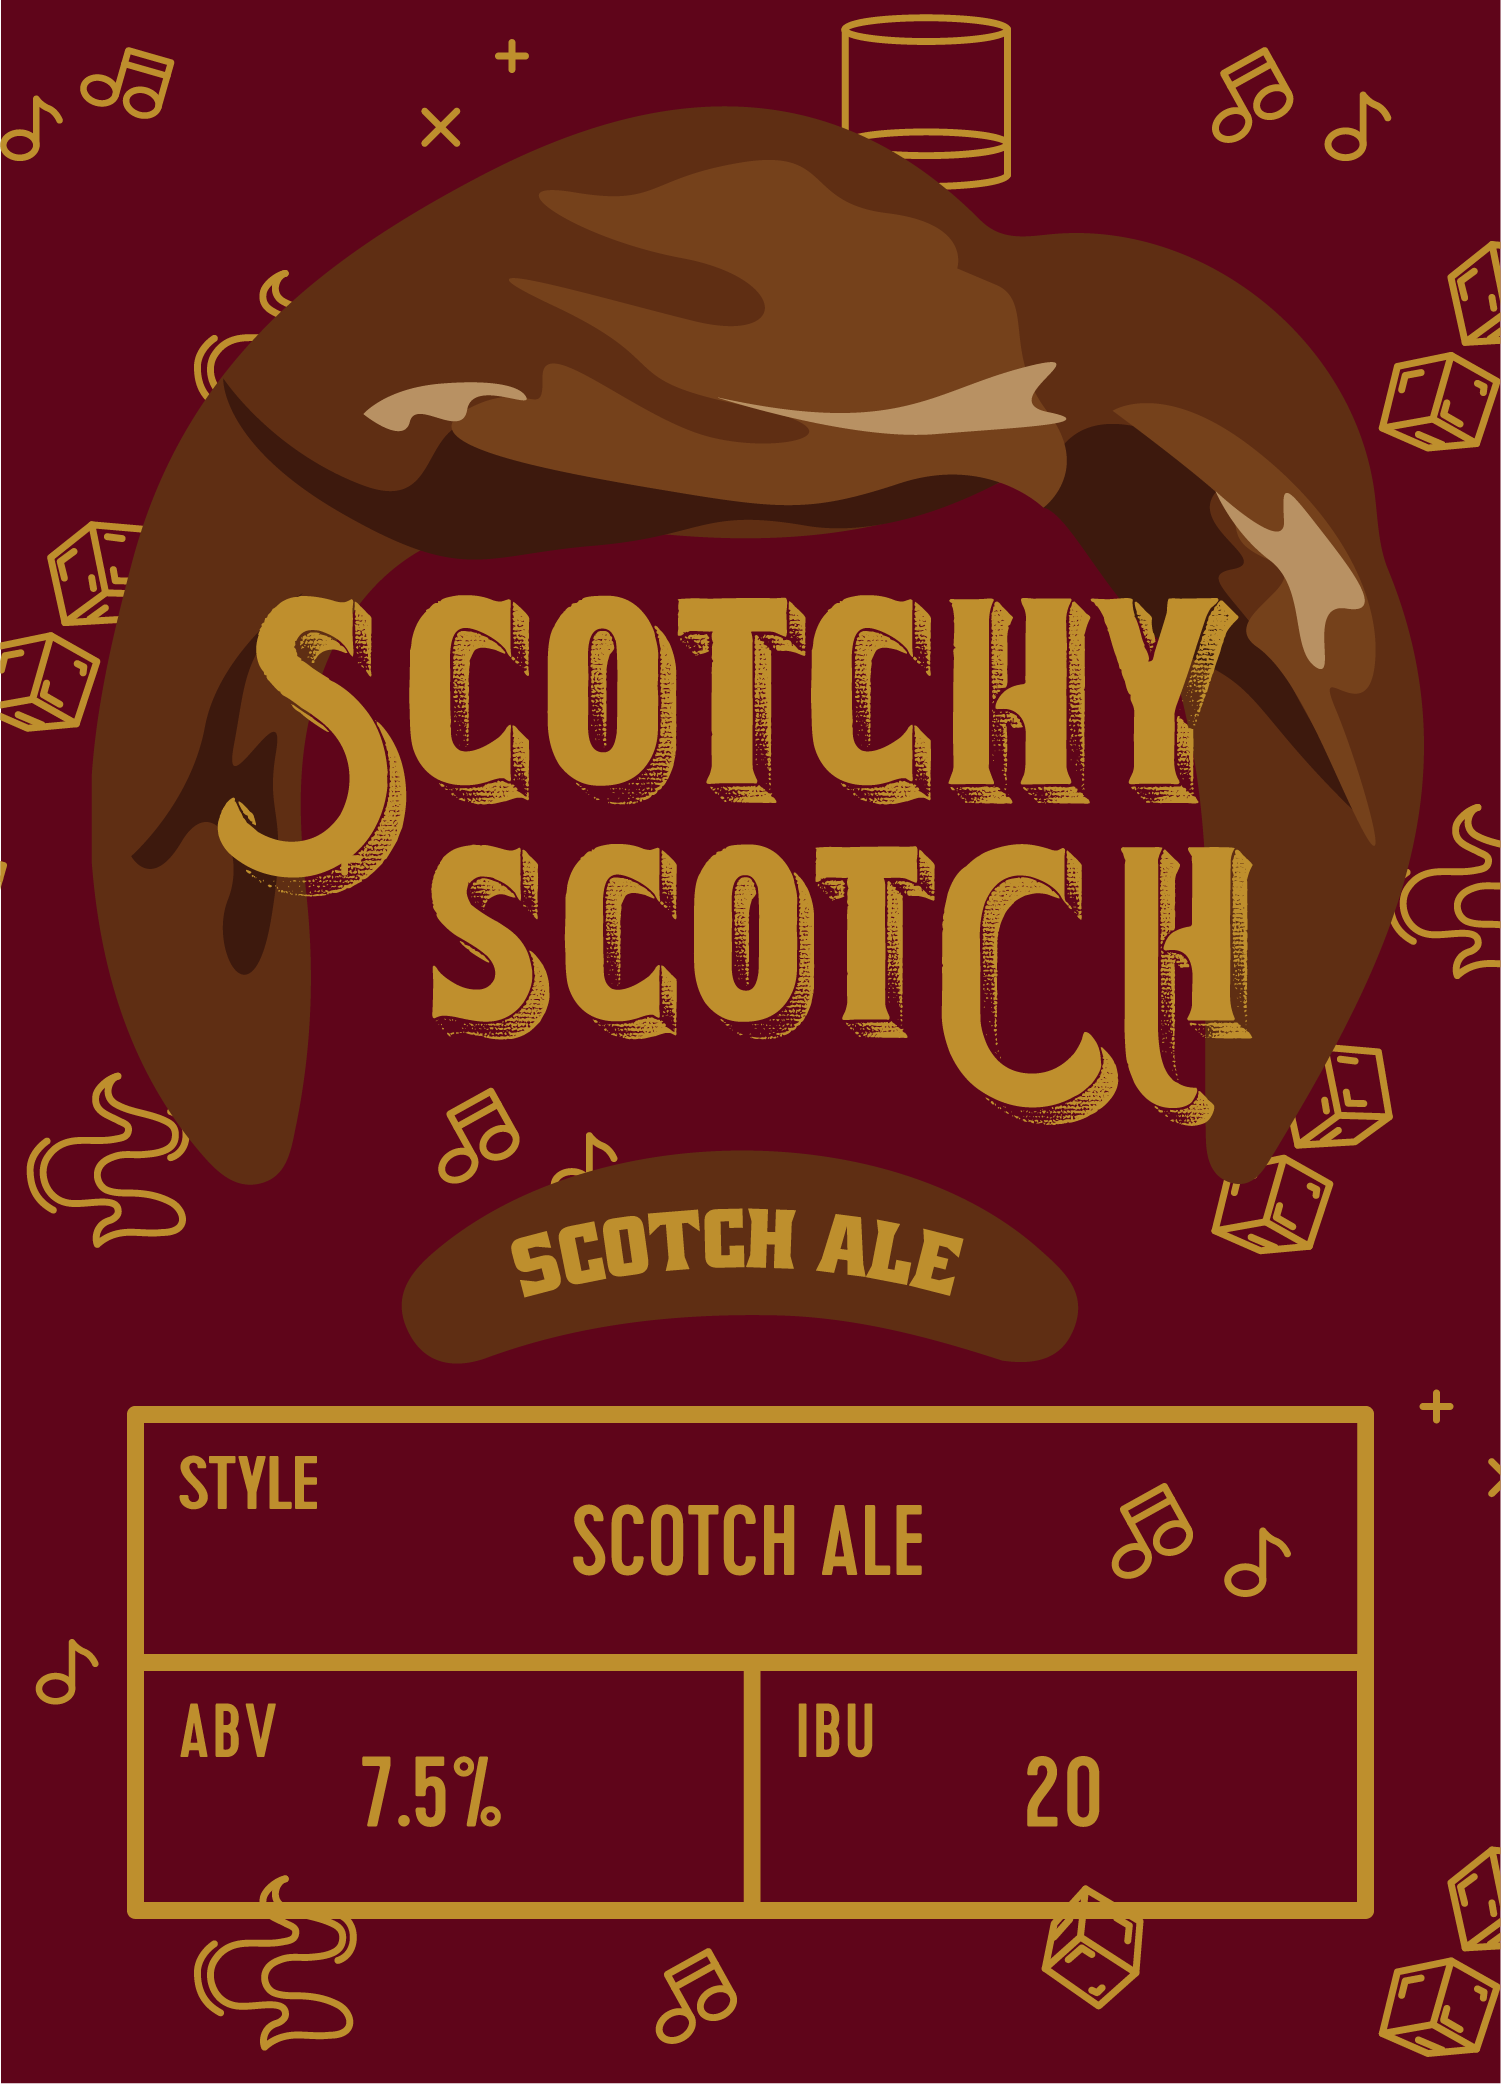 Scotchy Scotch Tile